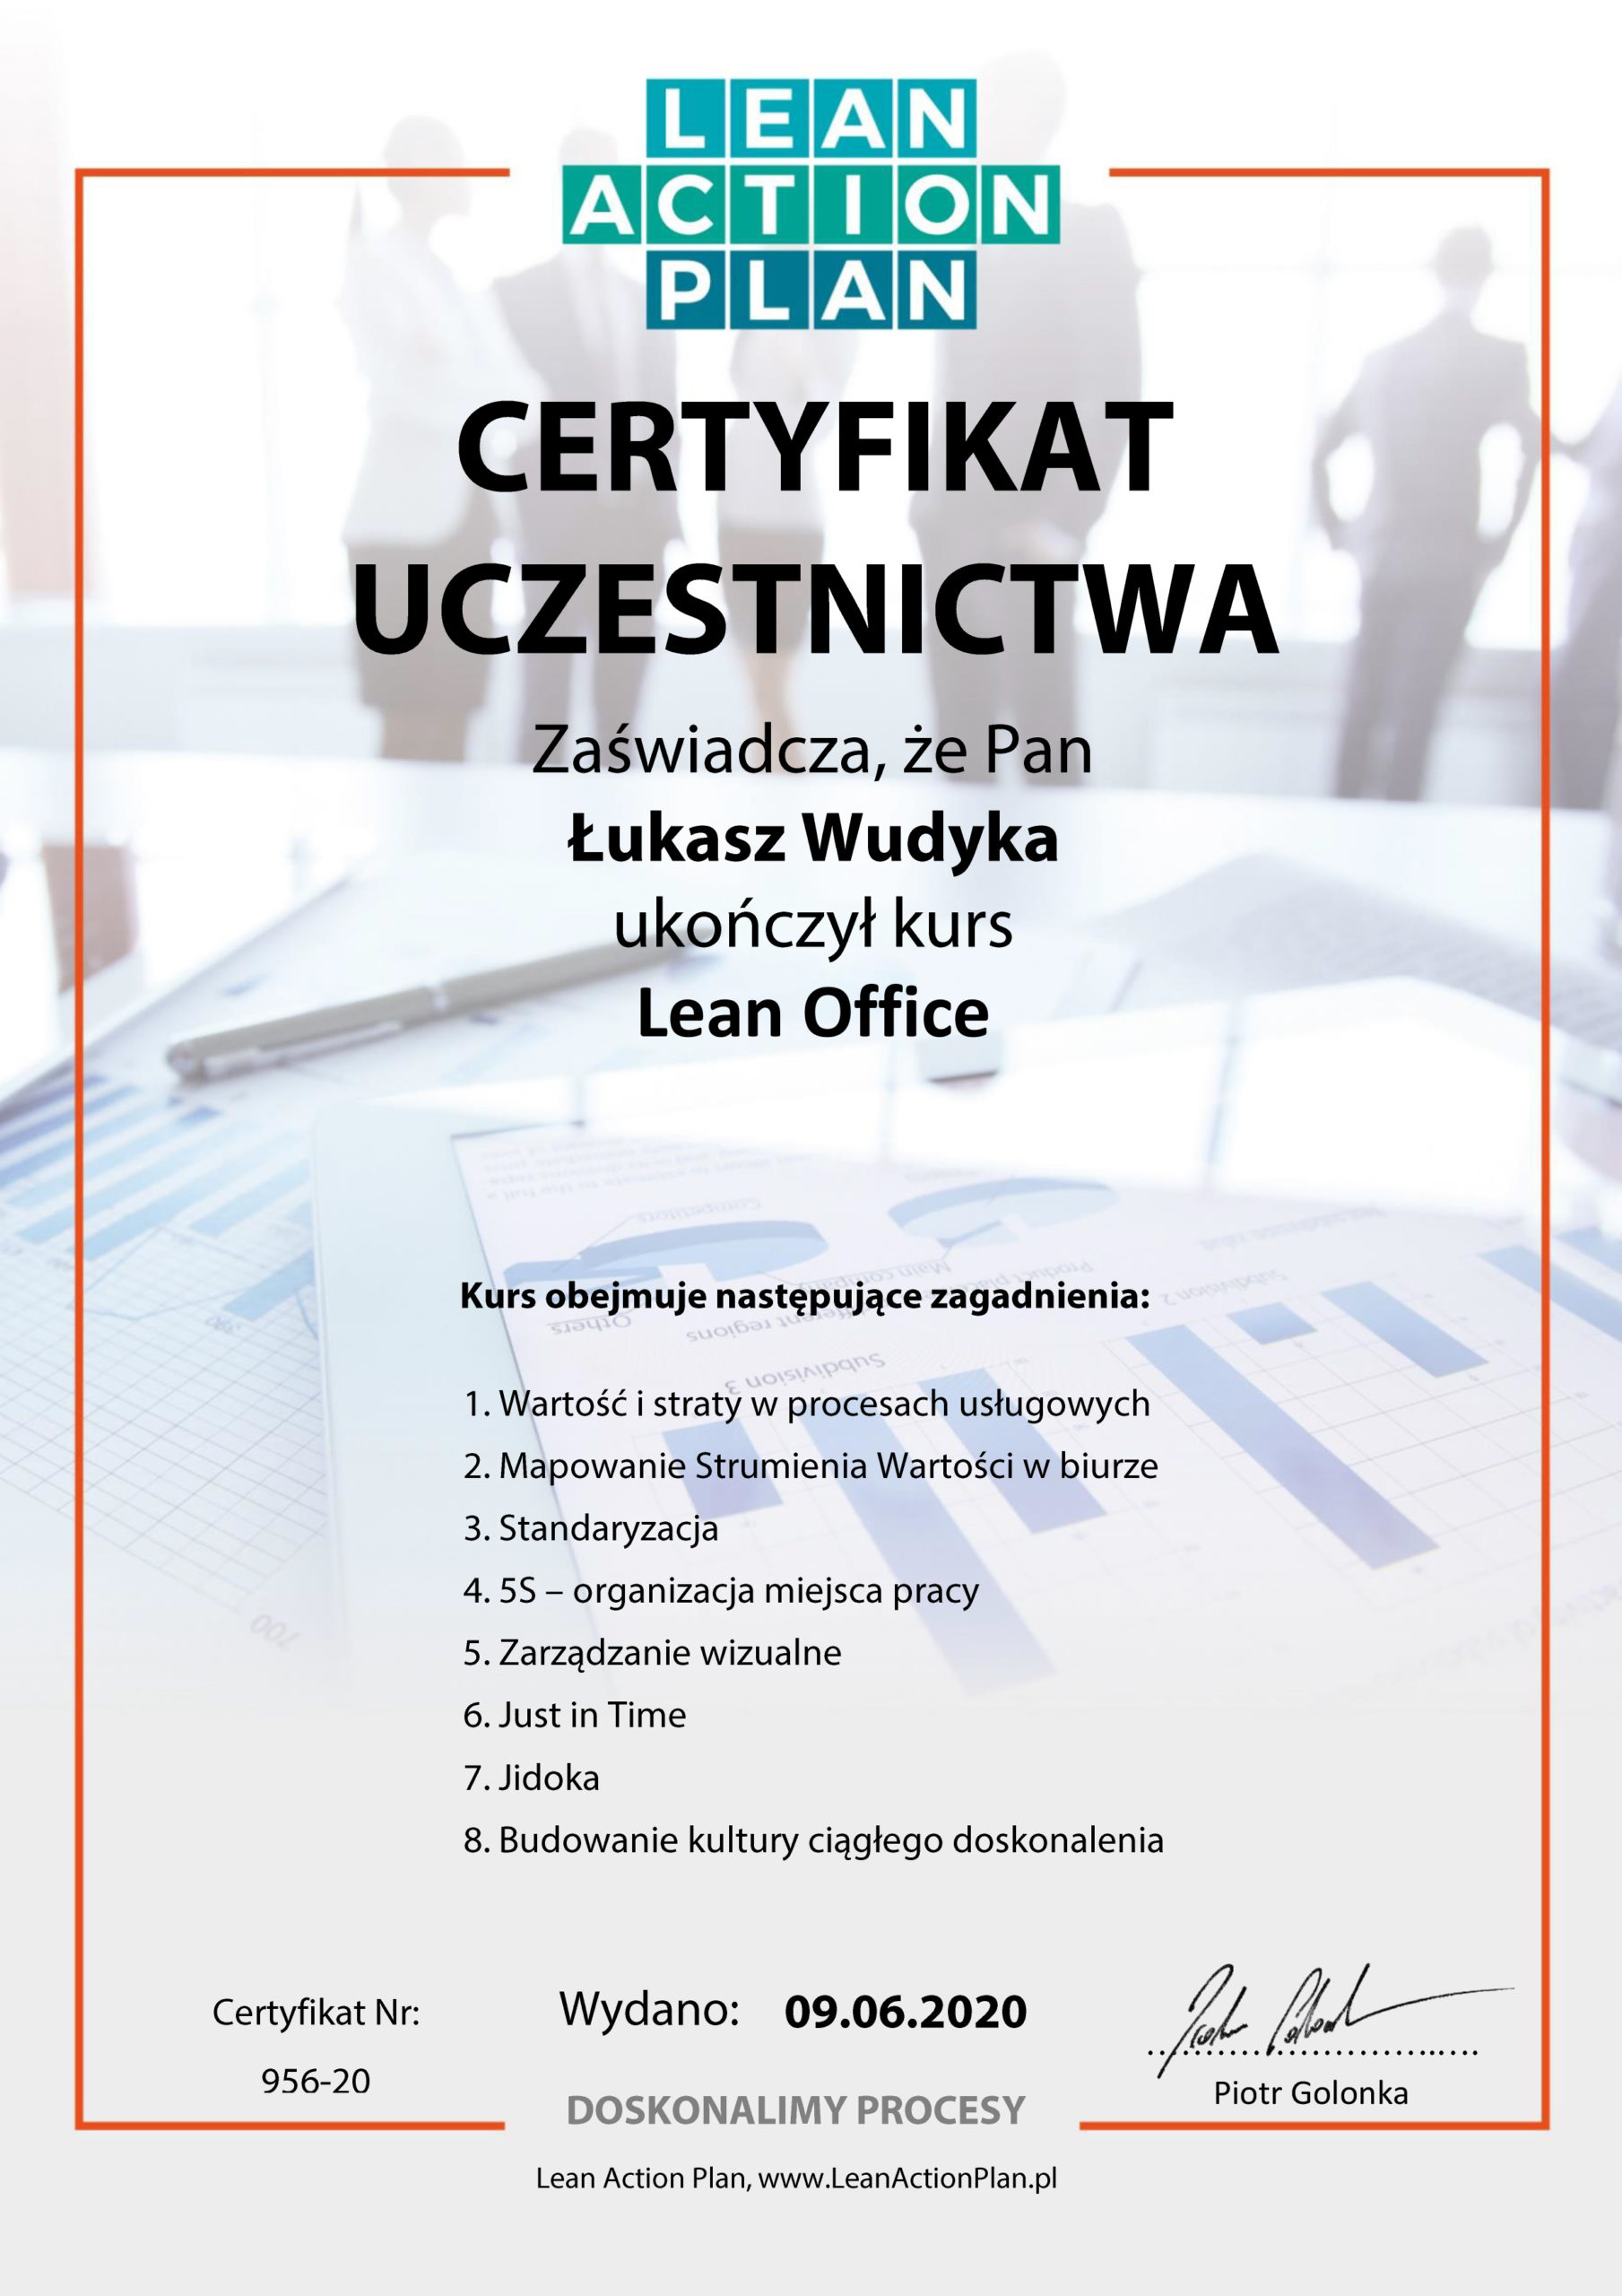 Łukasz Wudyka opinie o szkoleniach - Łukasz Wudyka certyfikat Lean Office